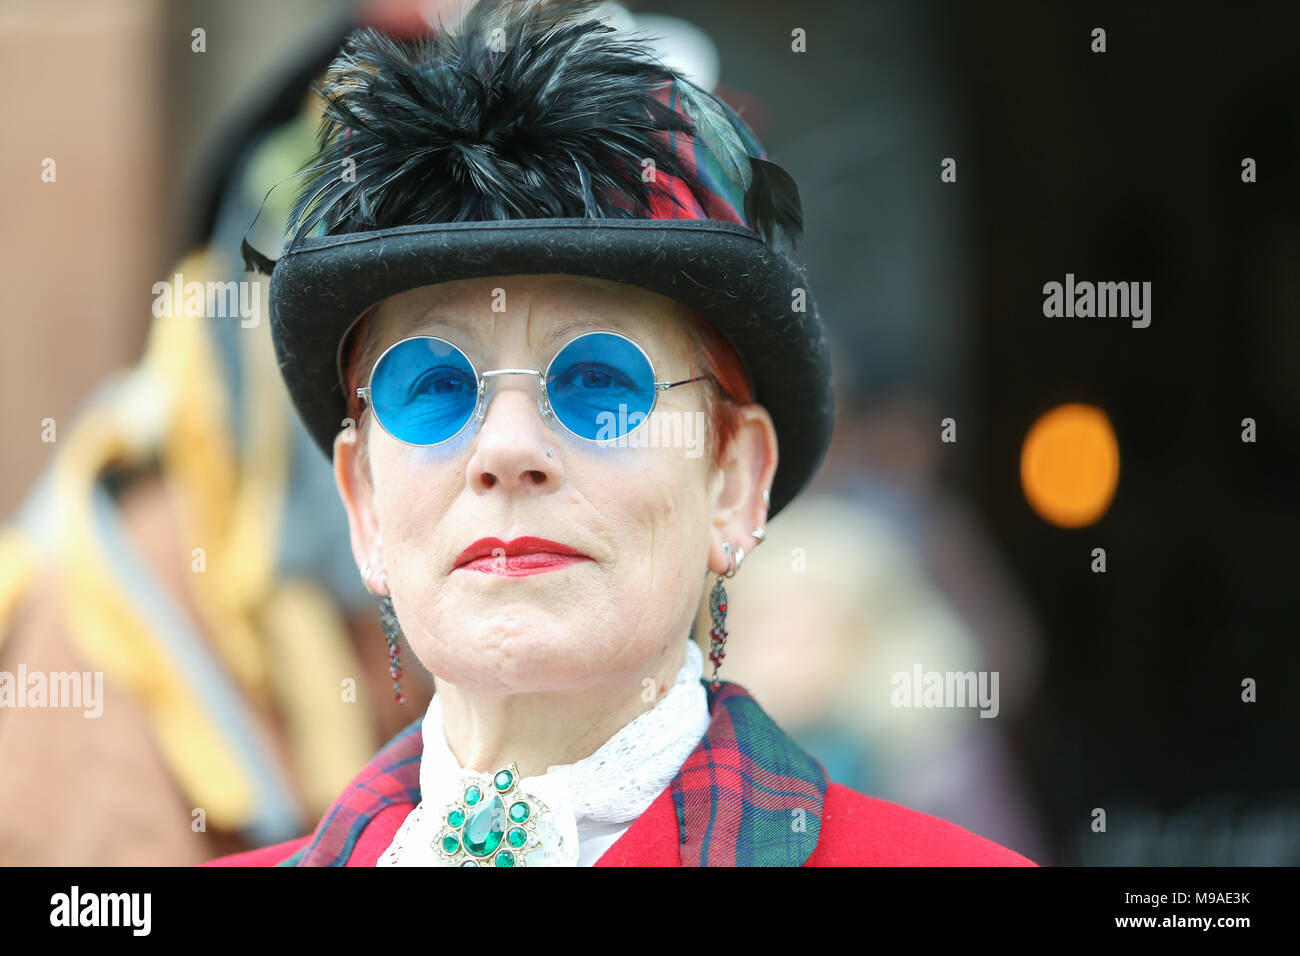 Señora vistiendo ropa estilo steampunk tintada azul y gafas de sol.  Steampunk es un estilo de moda que combina elementos históricos y  tecnología anacrónica, a menudo inspiradas en la ciencia ficción de